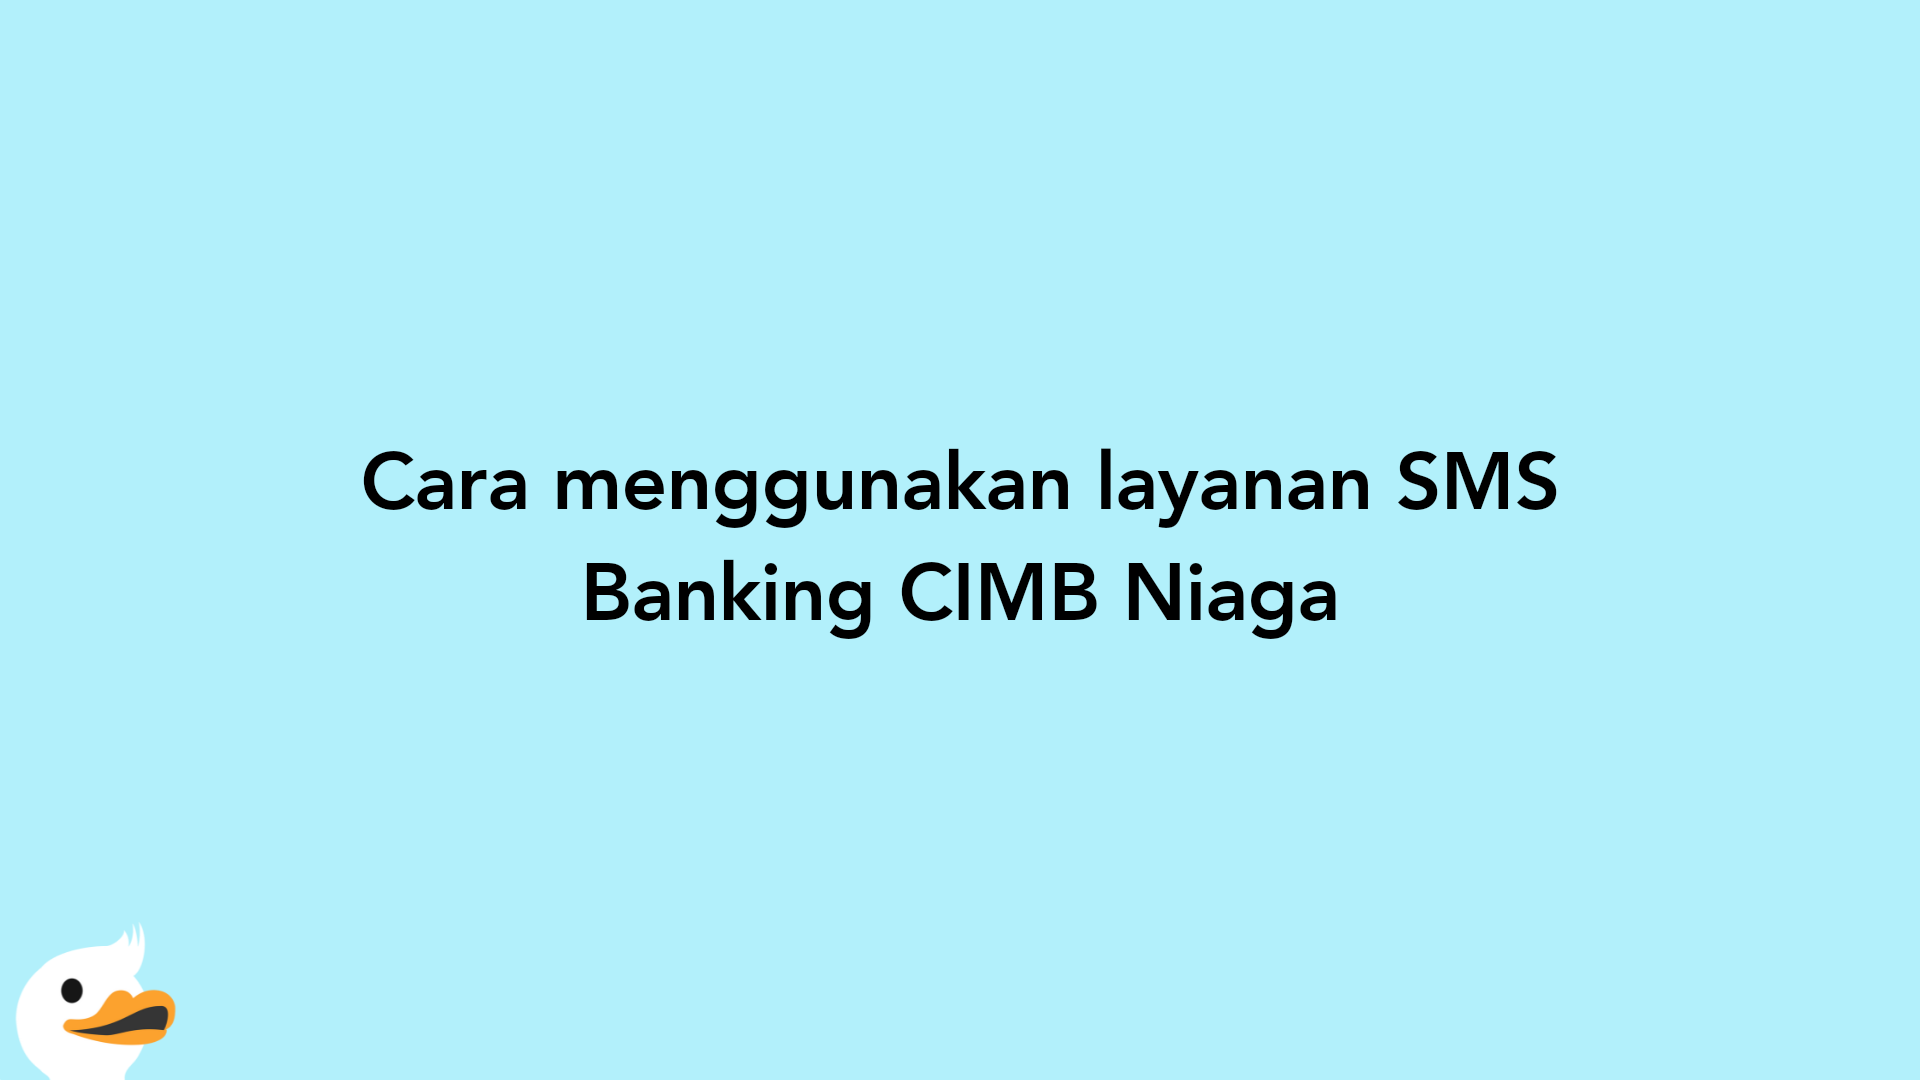 Cara menggunakan layanan SMS Banking CIMB Niaga